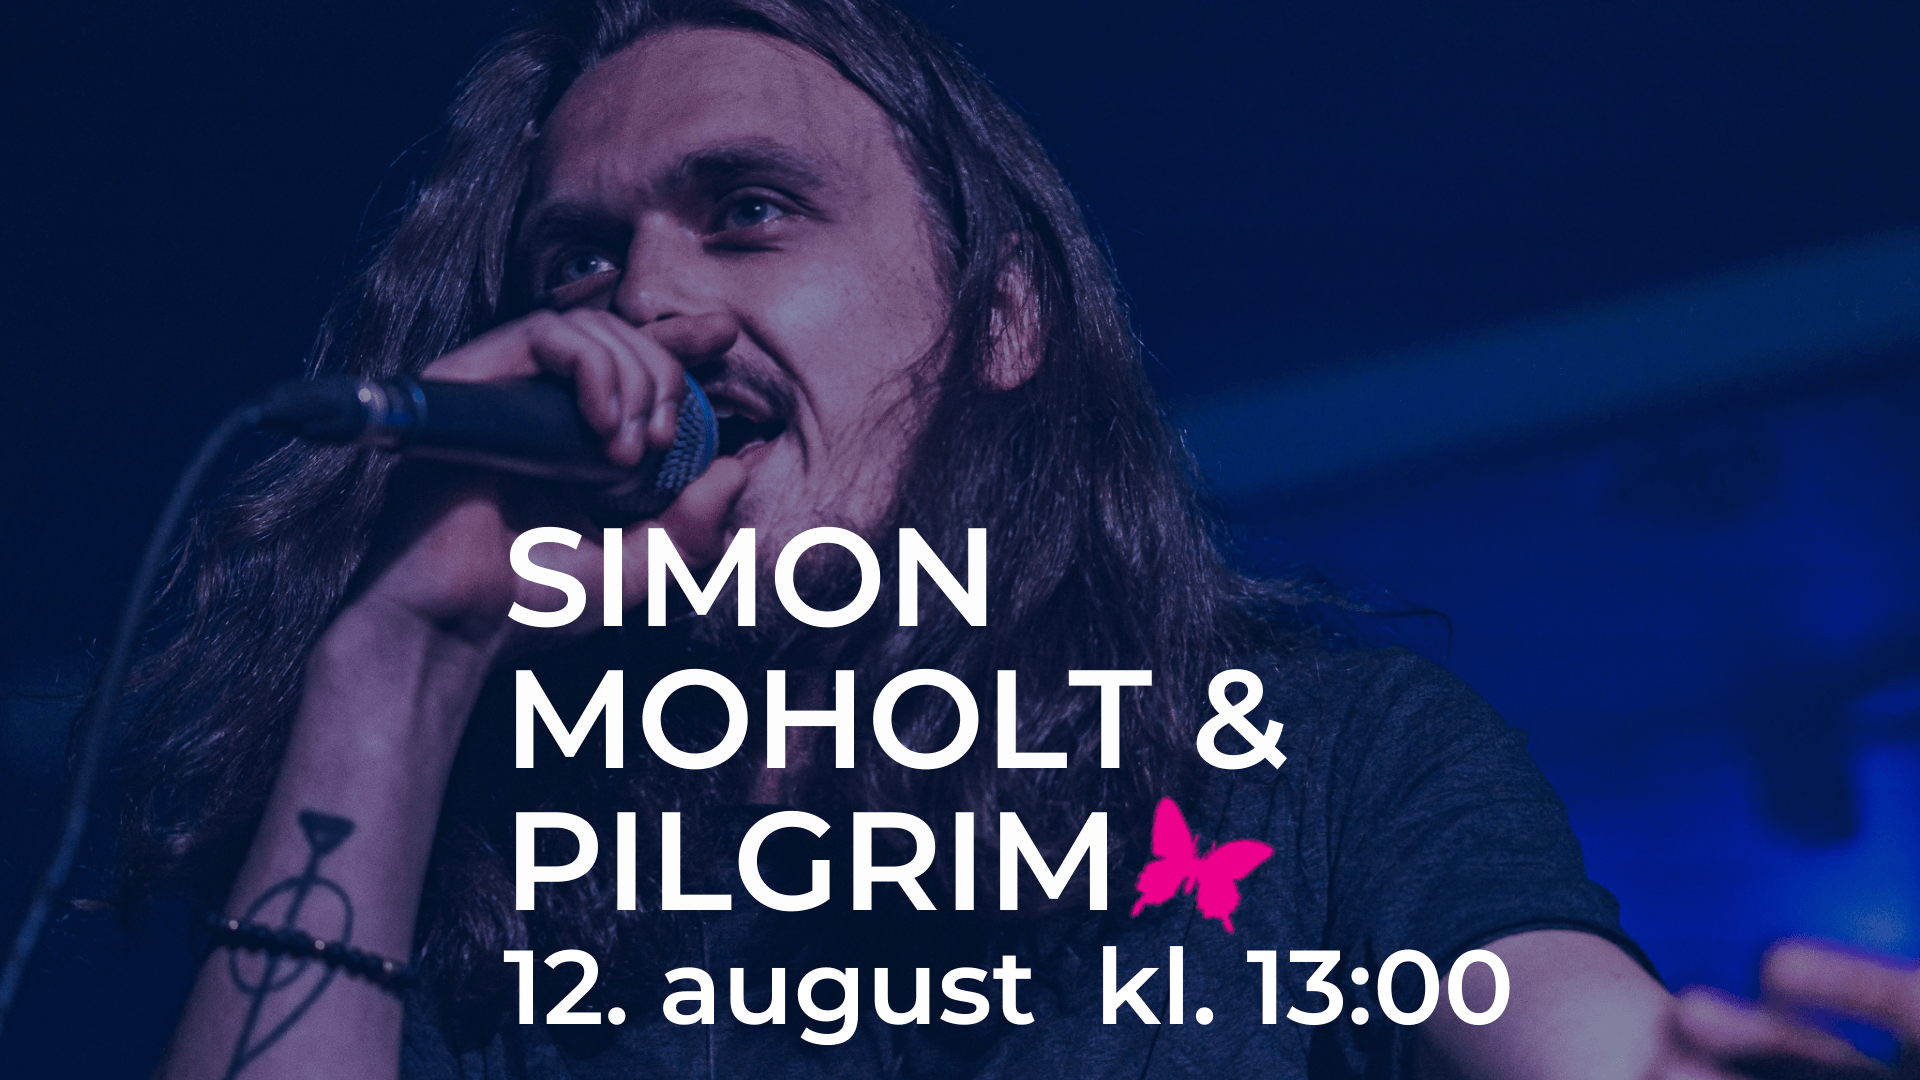 Simon Moholt & Pilgrim på scenen, synger i mikrofon